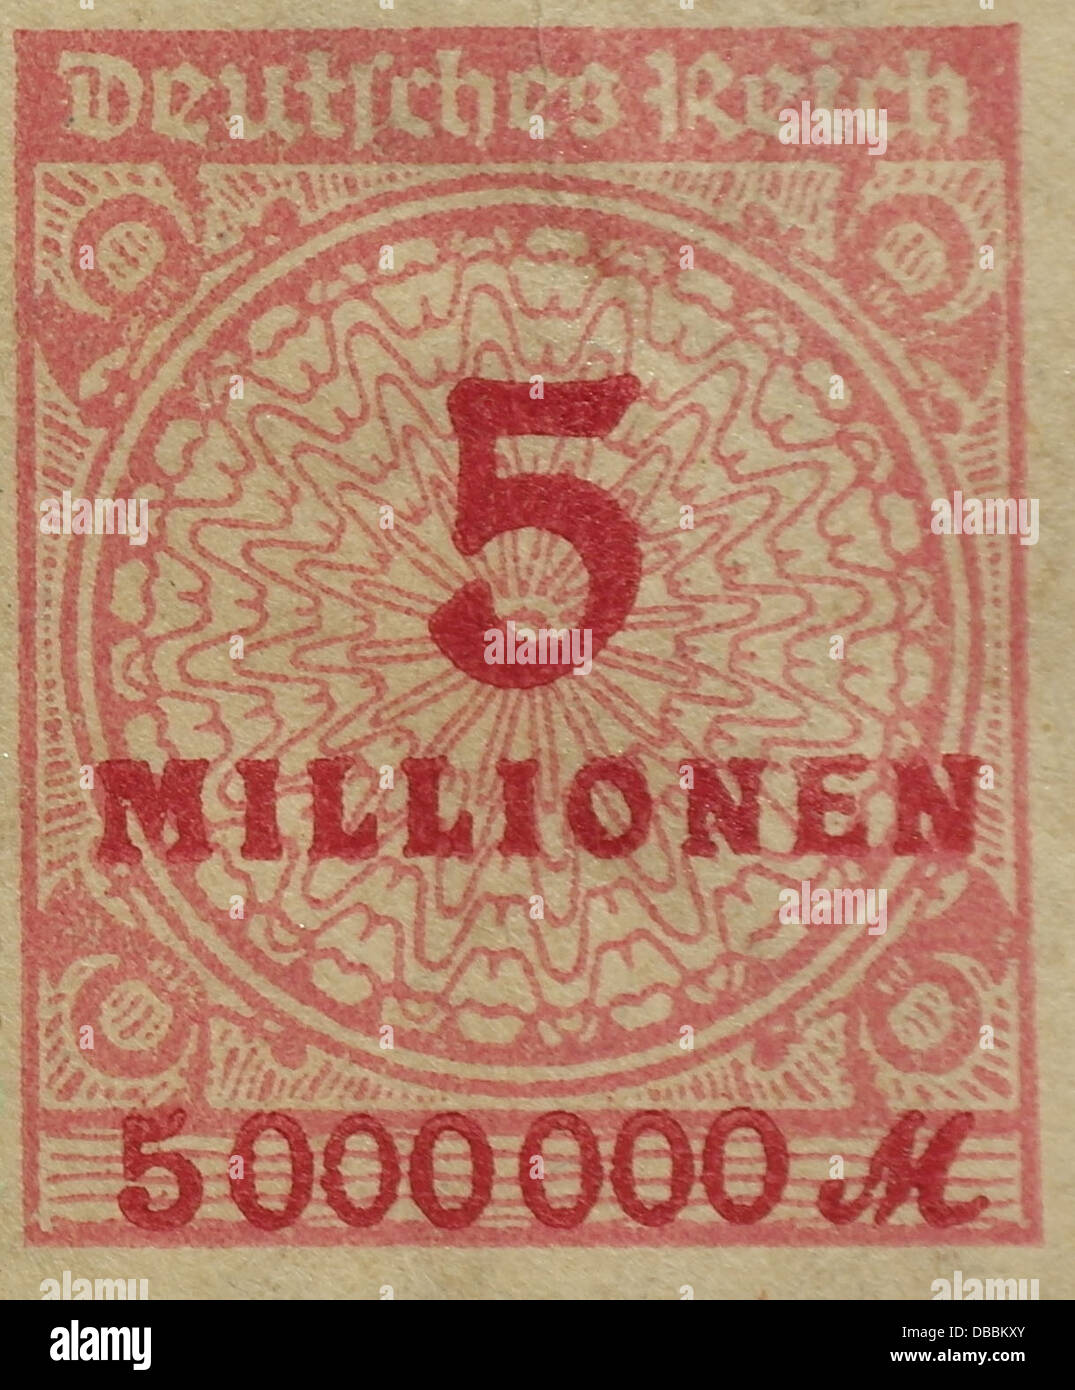 Rot 5 Millionen Mark Briefmarke aus dem Jahr 1923, wenn Hyperinflation der Weimarer Republik Deutschland betroffen Stockfoto